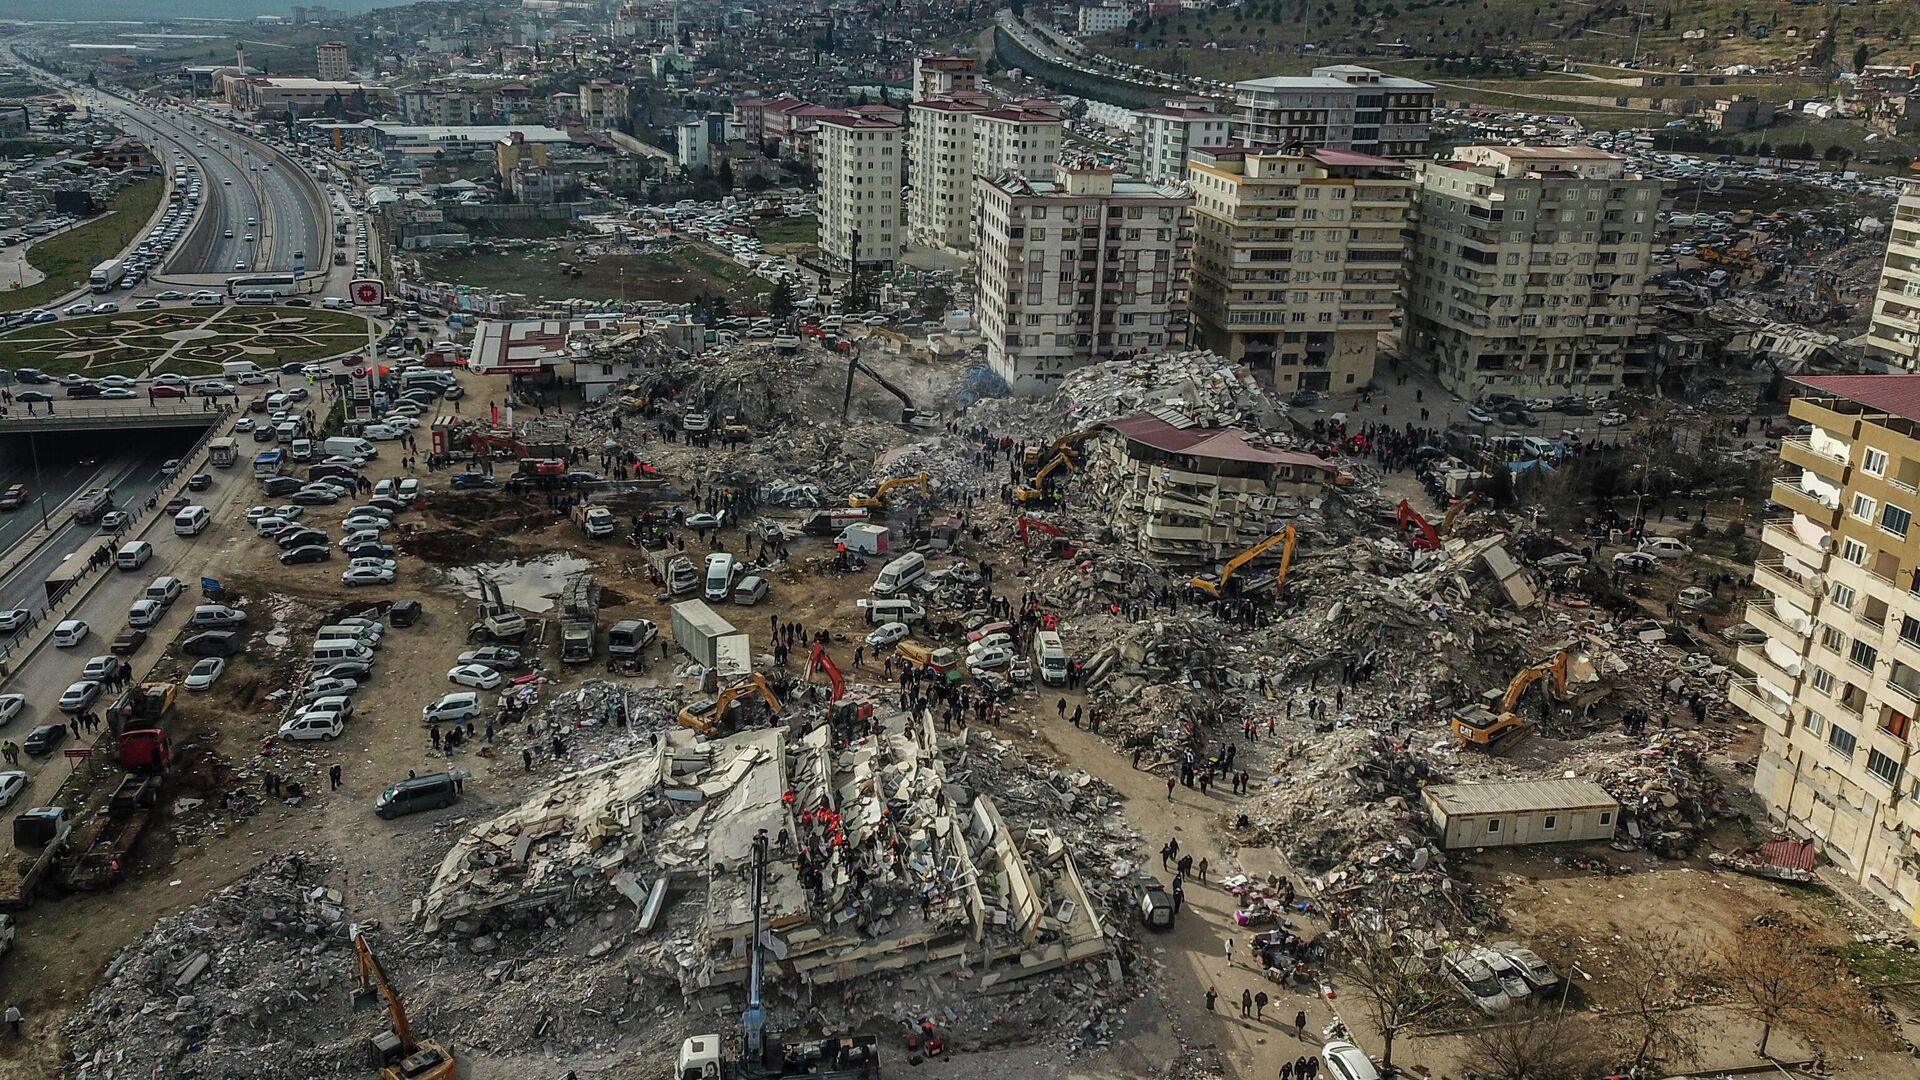 12 января 2023 г. Кахраманмараш Турция землетрясение. Землетрясение в Турции 2023. Землетрясение в Турции 2023 Кахраманмараш. Землетрясение в Турции и Сирии 2023.